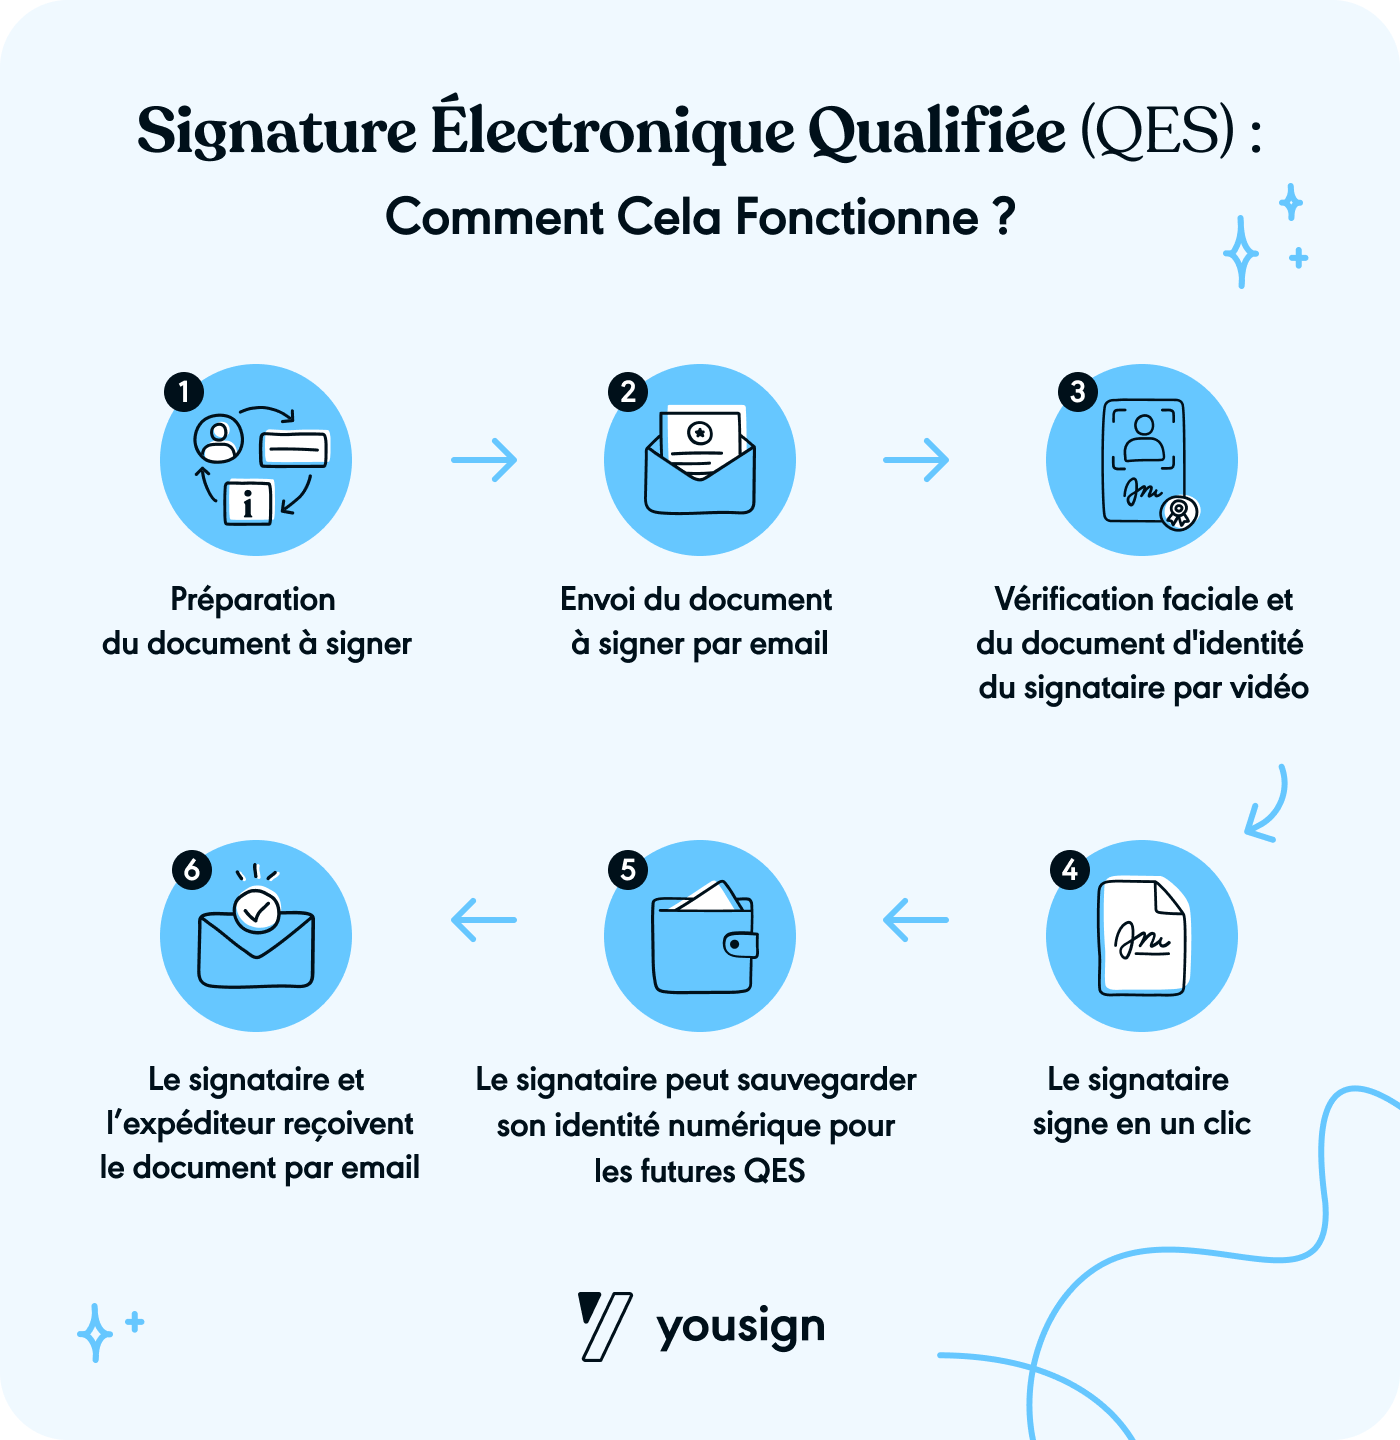 Comment fonctionne la signature électronique qualifiée ?